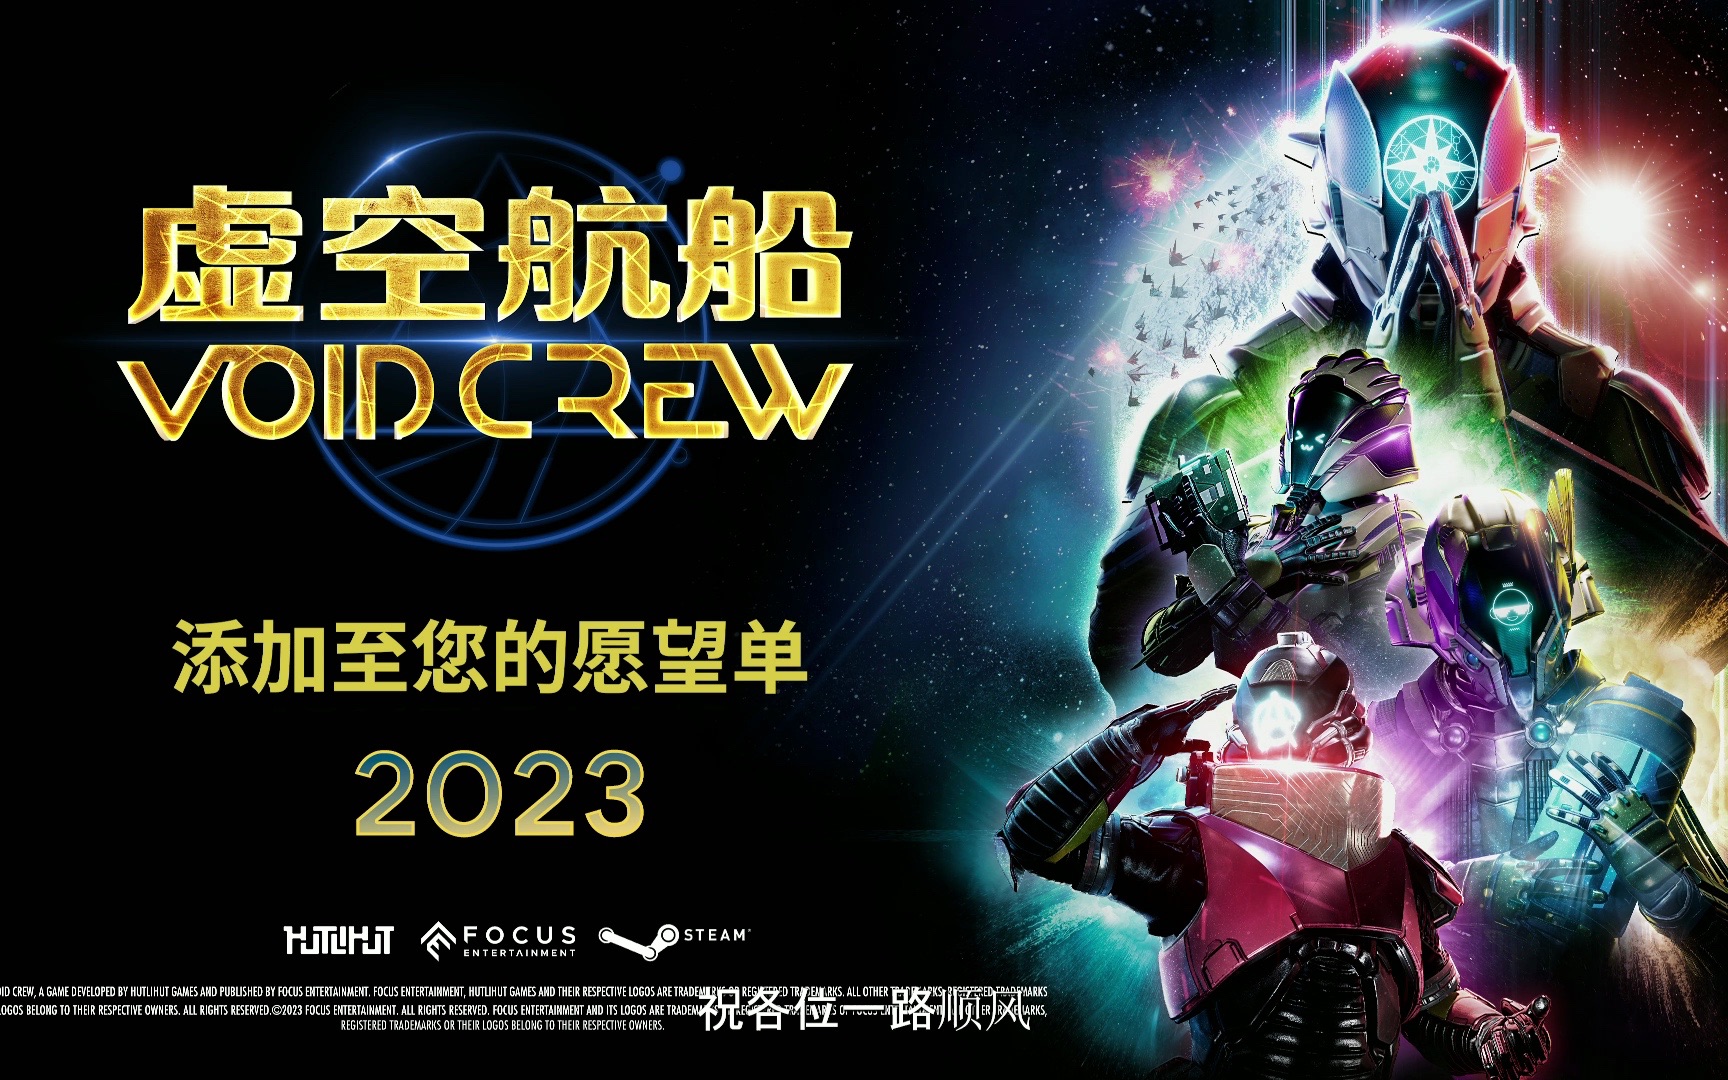 《虚空航船Void Crew》一款合作太空冒险游戏，将于2023年登陆PC，可在PAX East试玩预告片